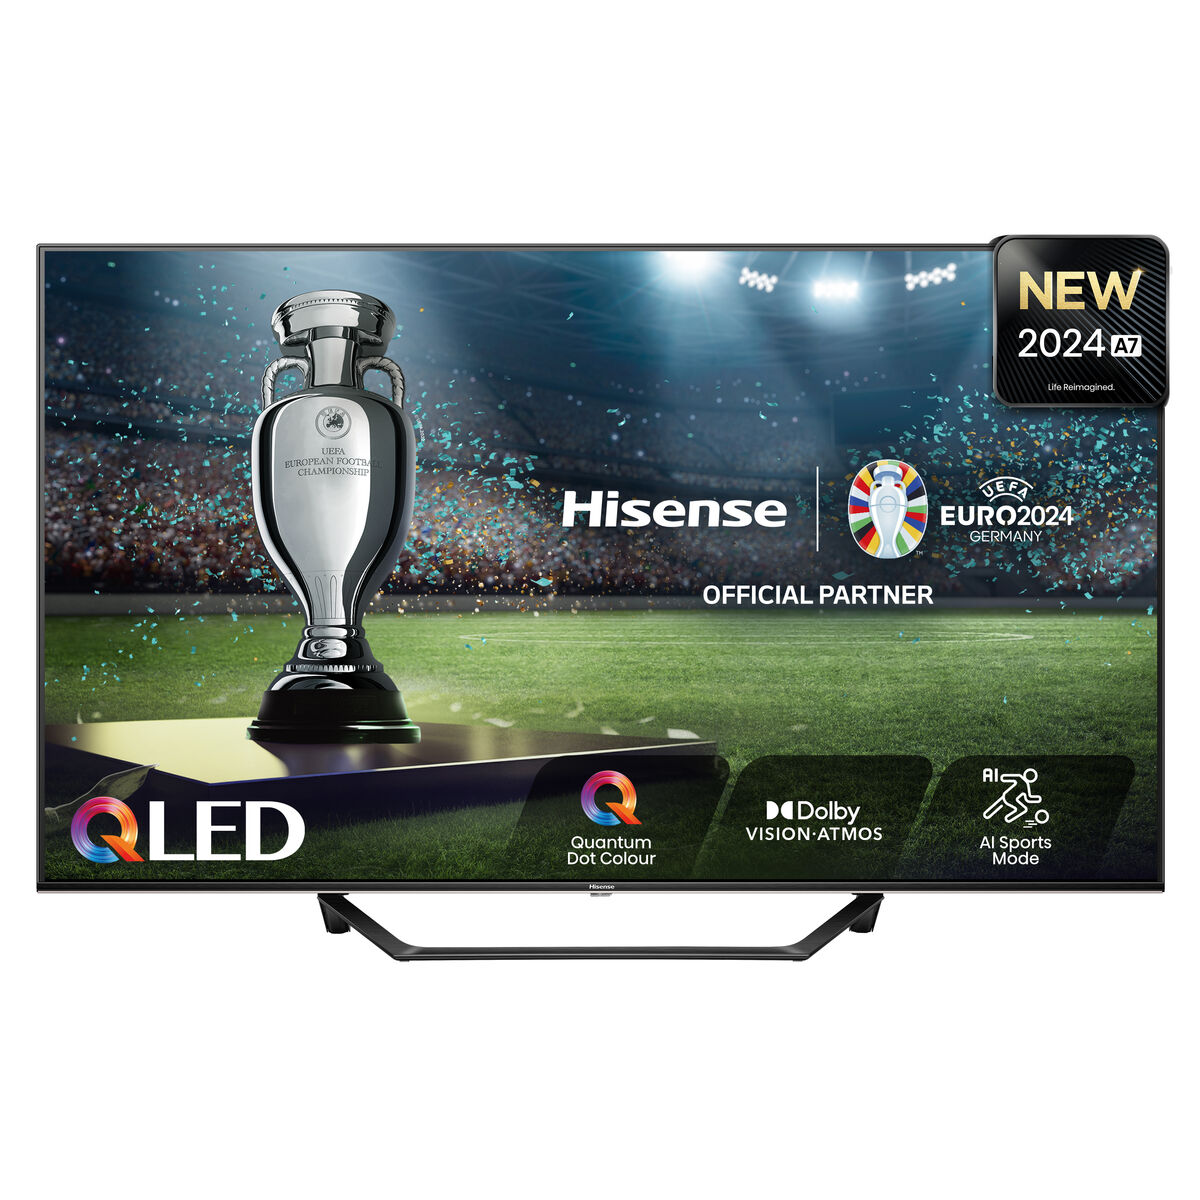 Osta tuote Smart TV Hisense 50A7NQ 4K Ultra HD 50″ QLED verkkokaupastamme Korhone: Tietokoneet & Elektroniikka 20% alennuksella koodilla VIIKONLOPPU